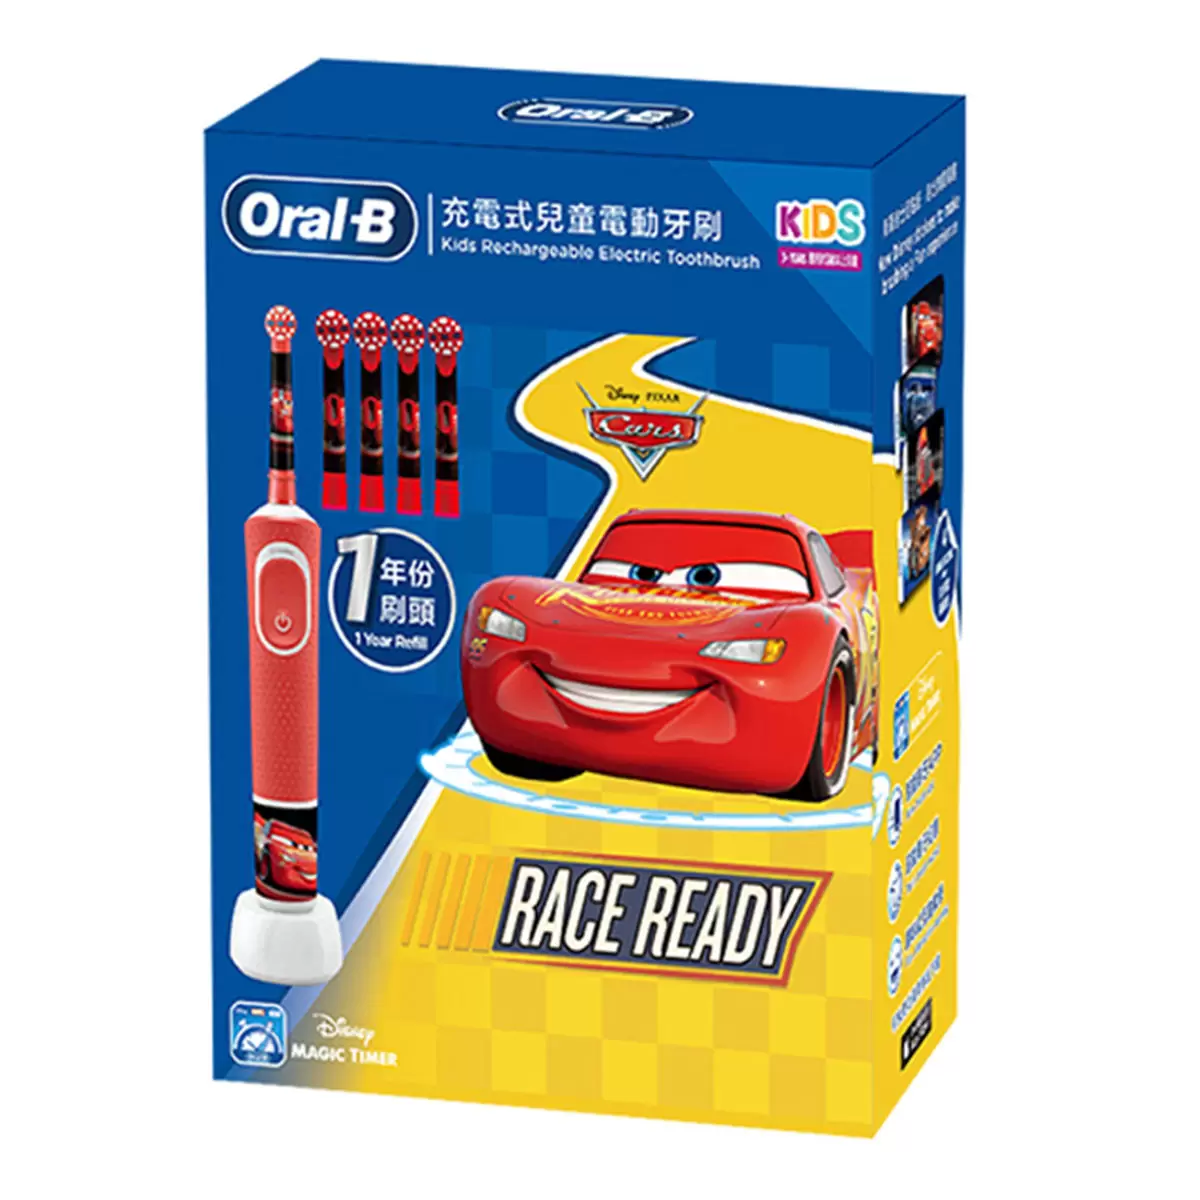 歐樂B 充電式兒童電動牙刷組 D100